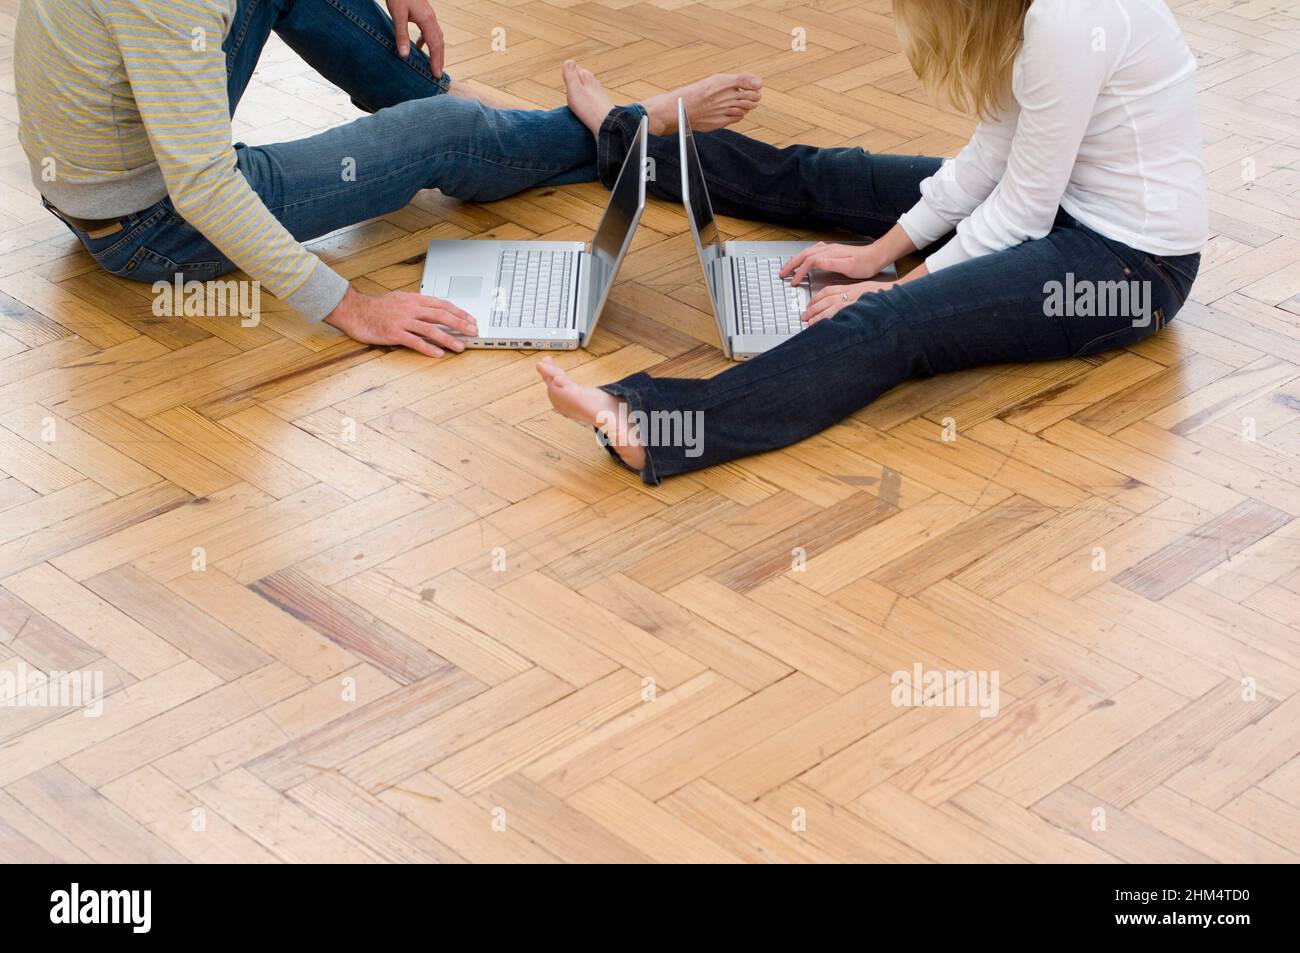 Vue en coupe basse d'Un homme et D'Une femme utilisant des ordinateurs portables, crédit:Photohot Creative / Stuart Cox / Avalon Banque D'Images